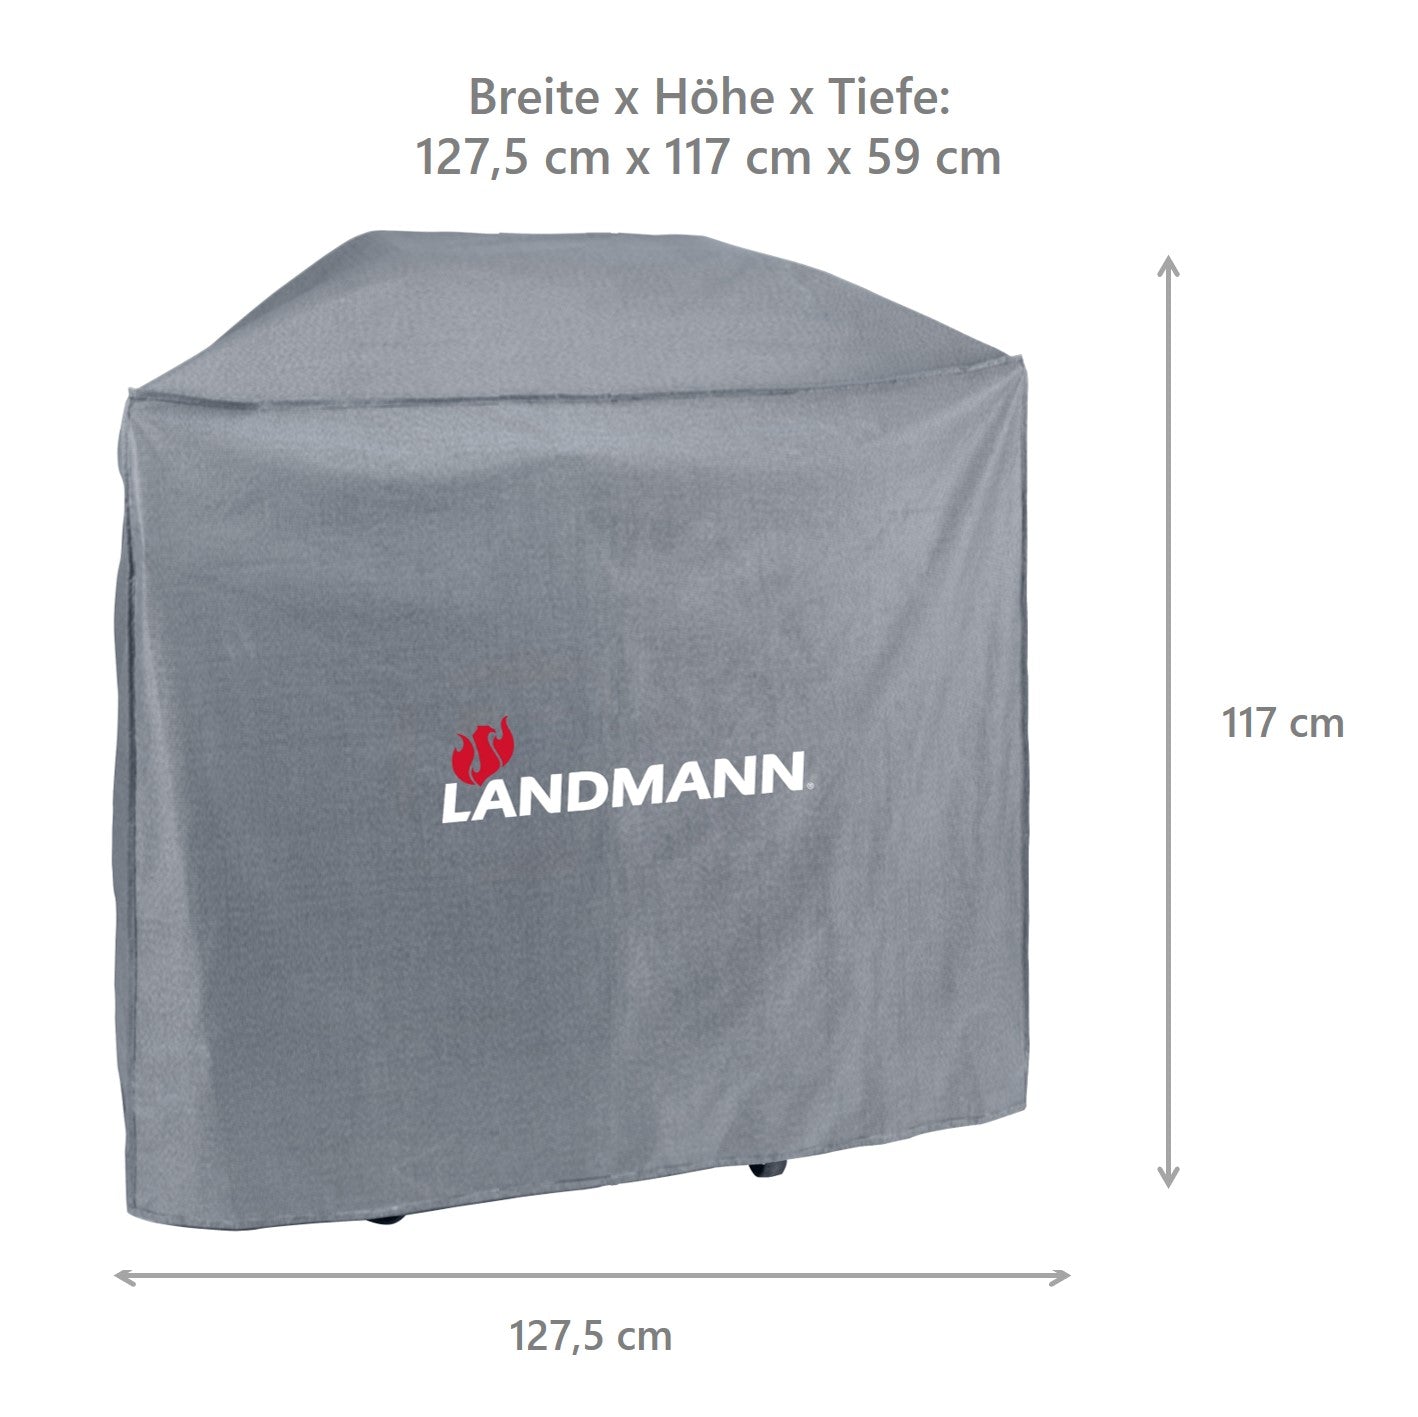 Premium Wetterschutzhaube - 59 x 127,5 x 117 cm